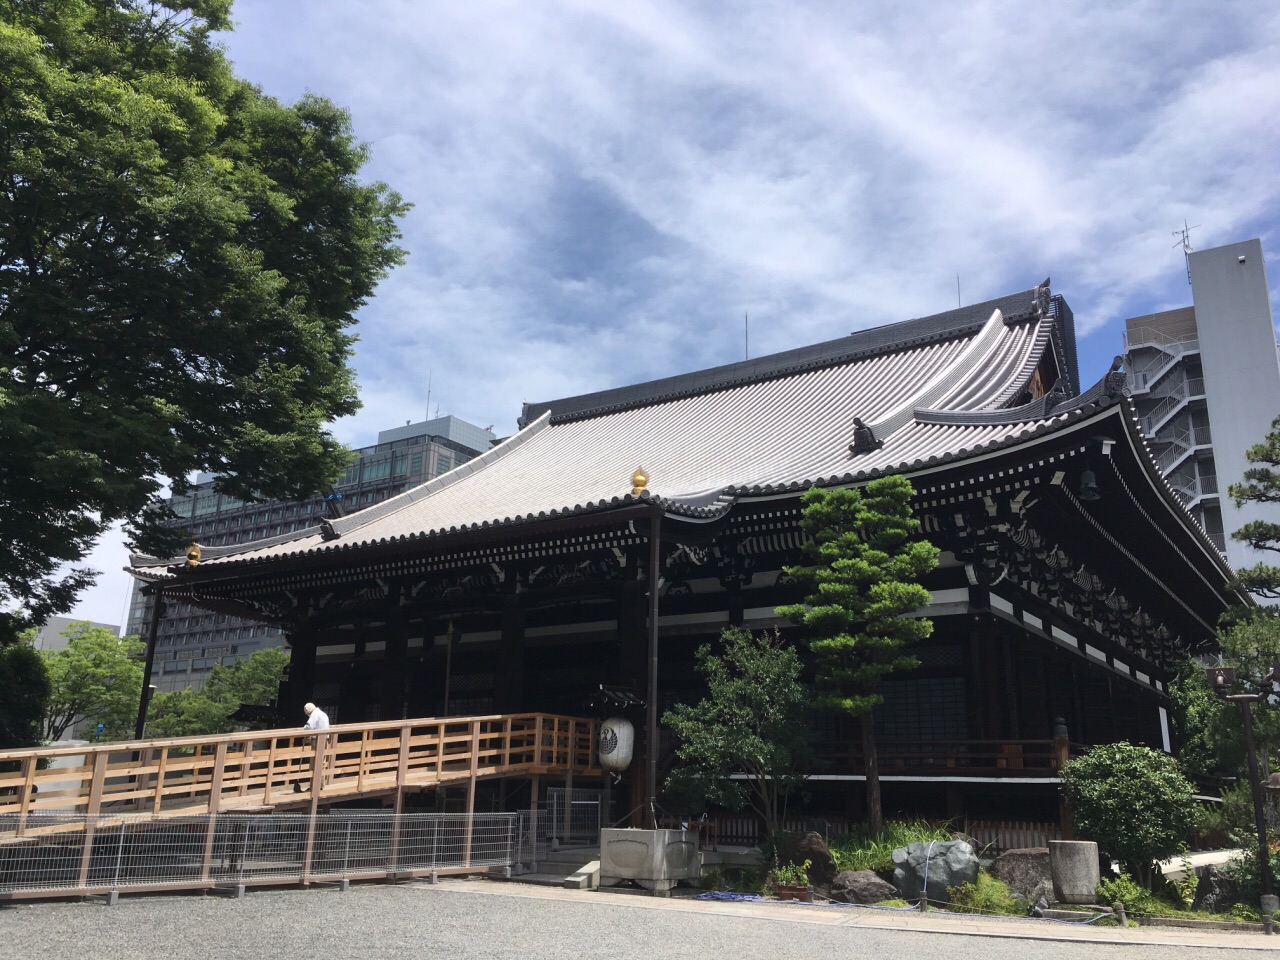 【携程攻略】京都本能寺好玩吗,京都本能寺景点怎么样